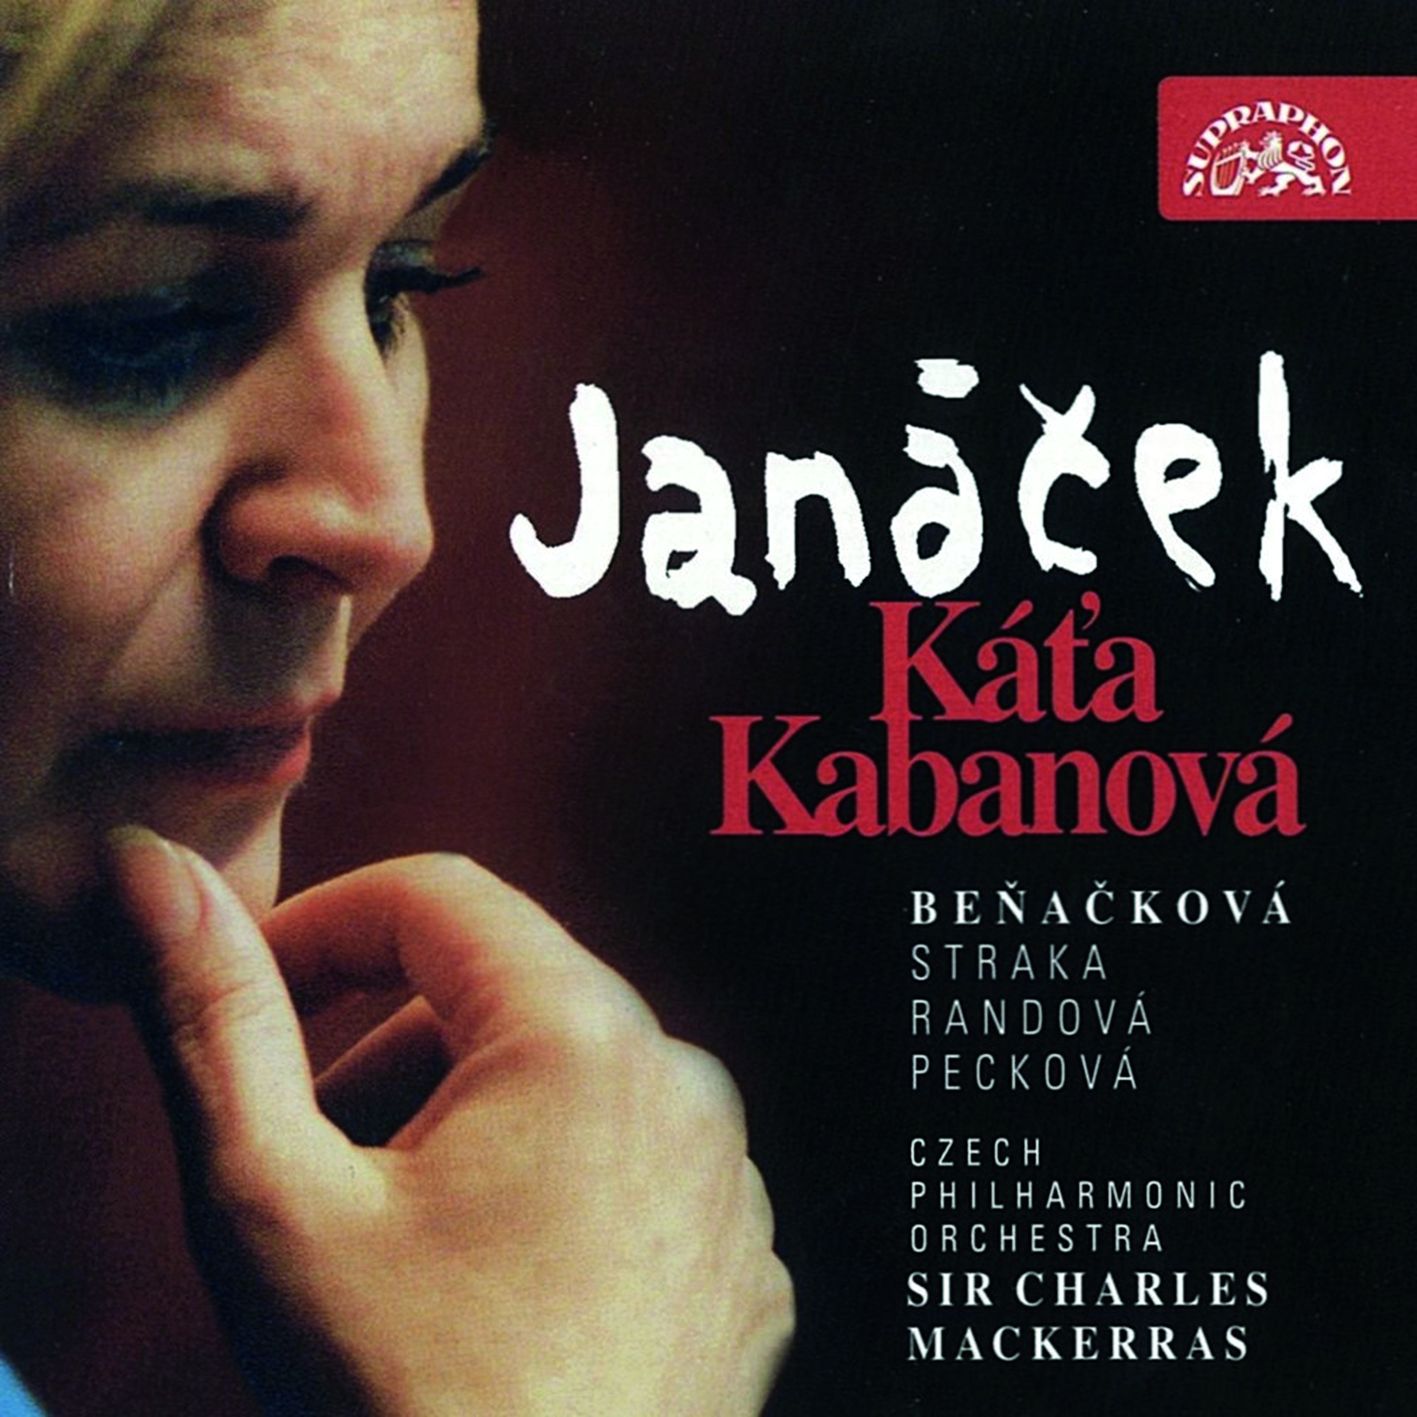 07-benackova-kata-kabanova.jpg (206 KB)